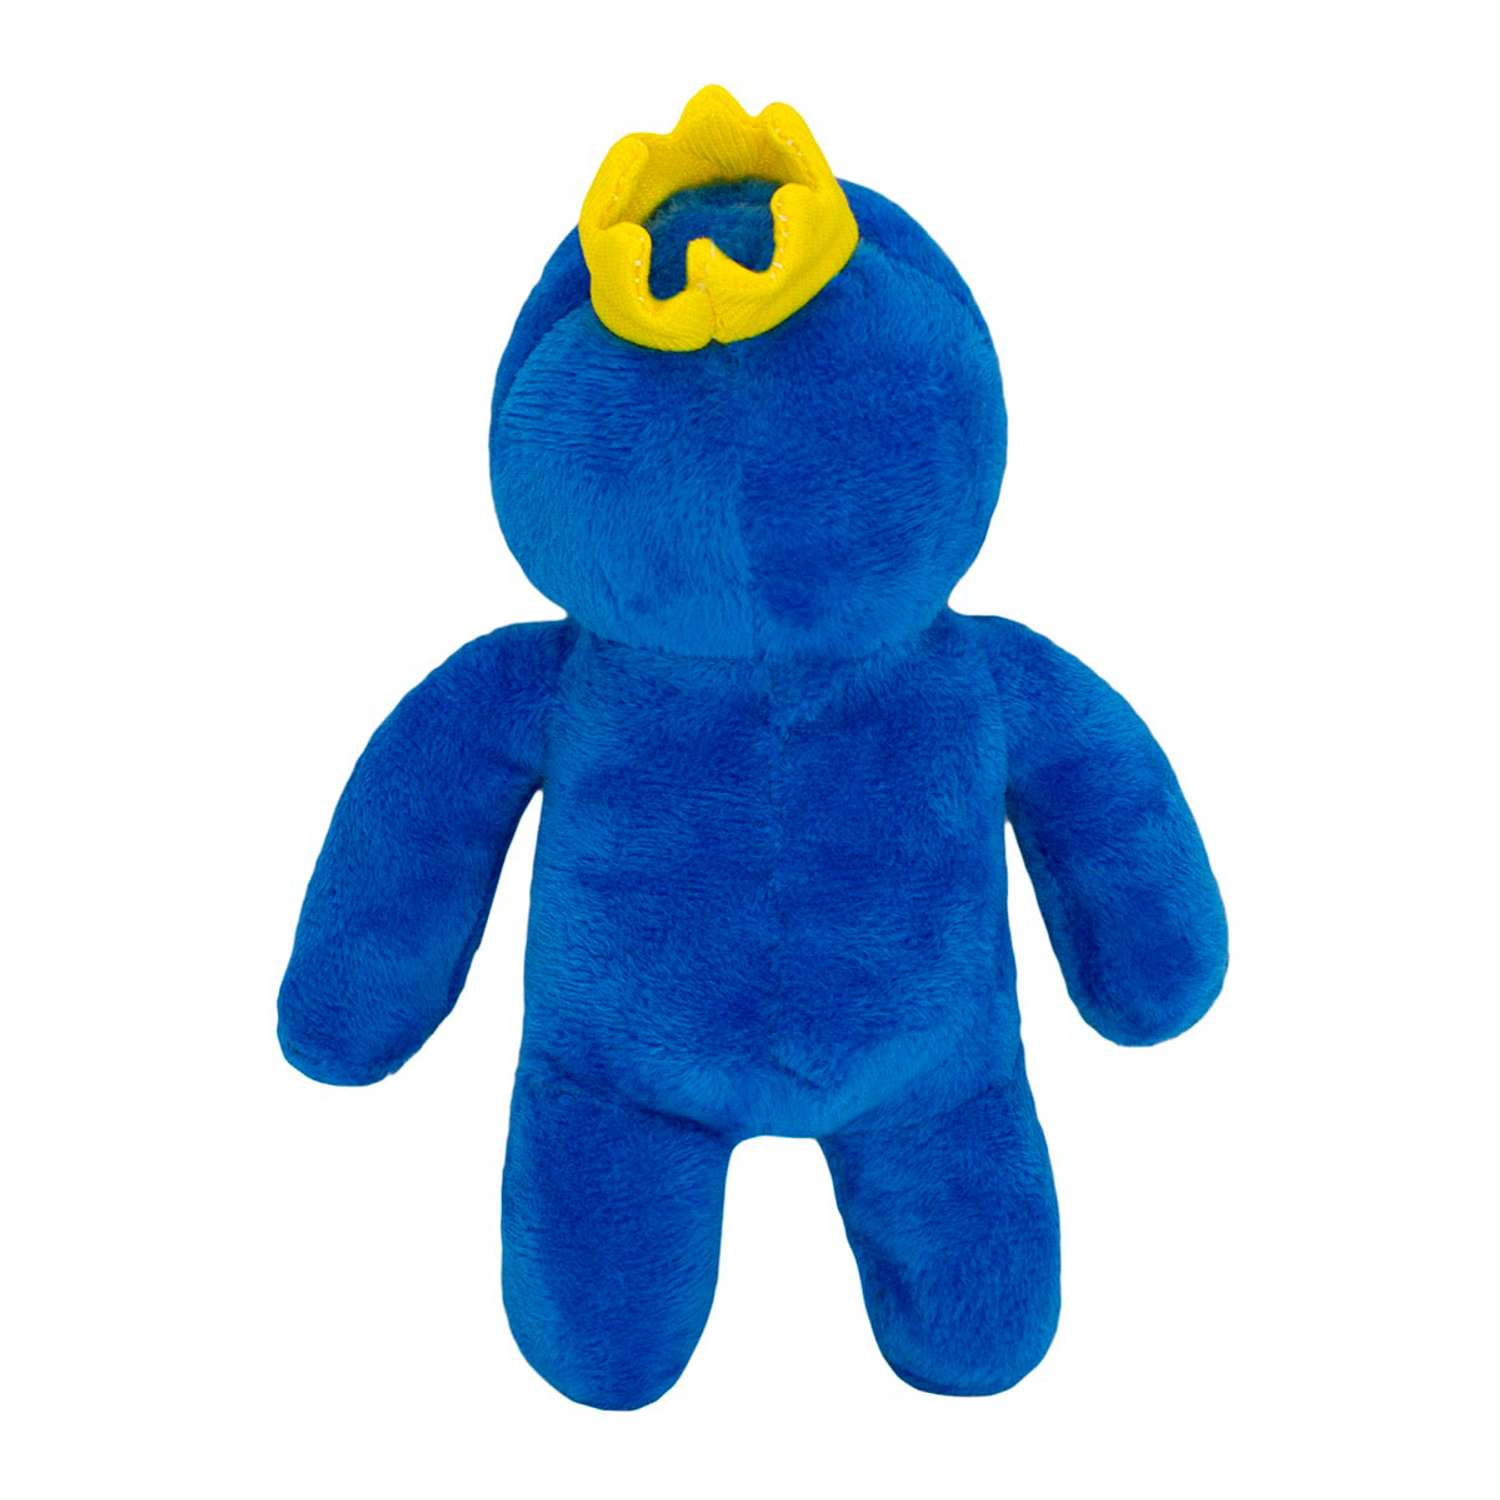 Мягкая игрушка Михи-Михи радужные друзья Rainbow friends Blue синий 20см - фото 2